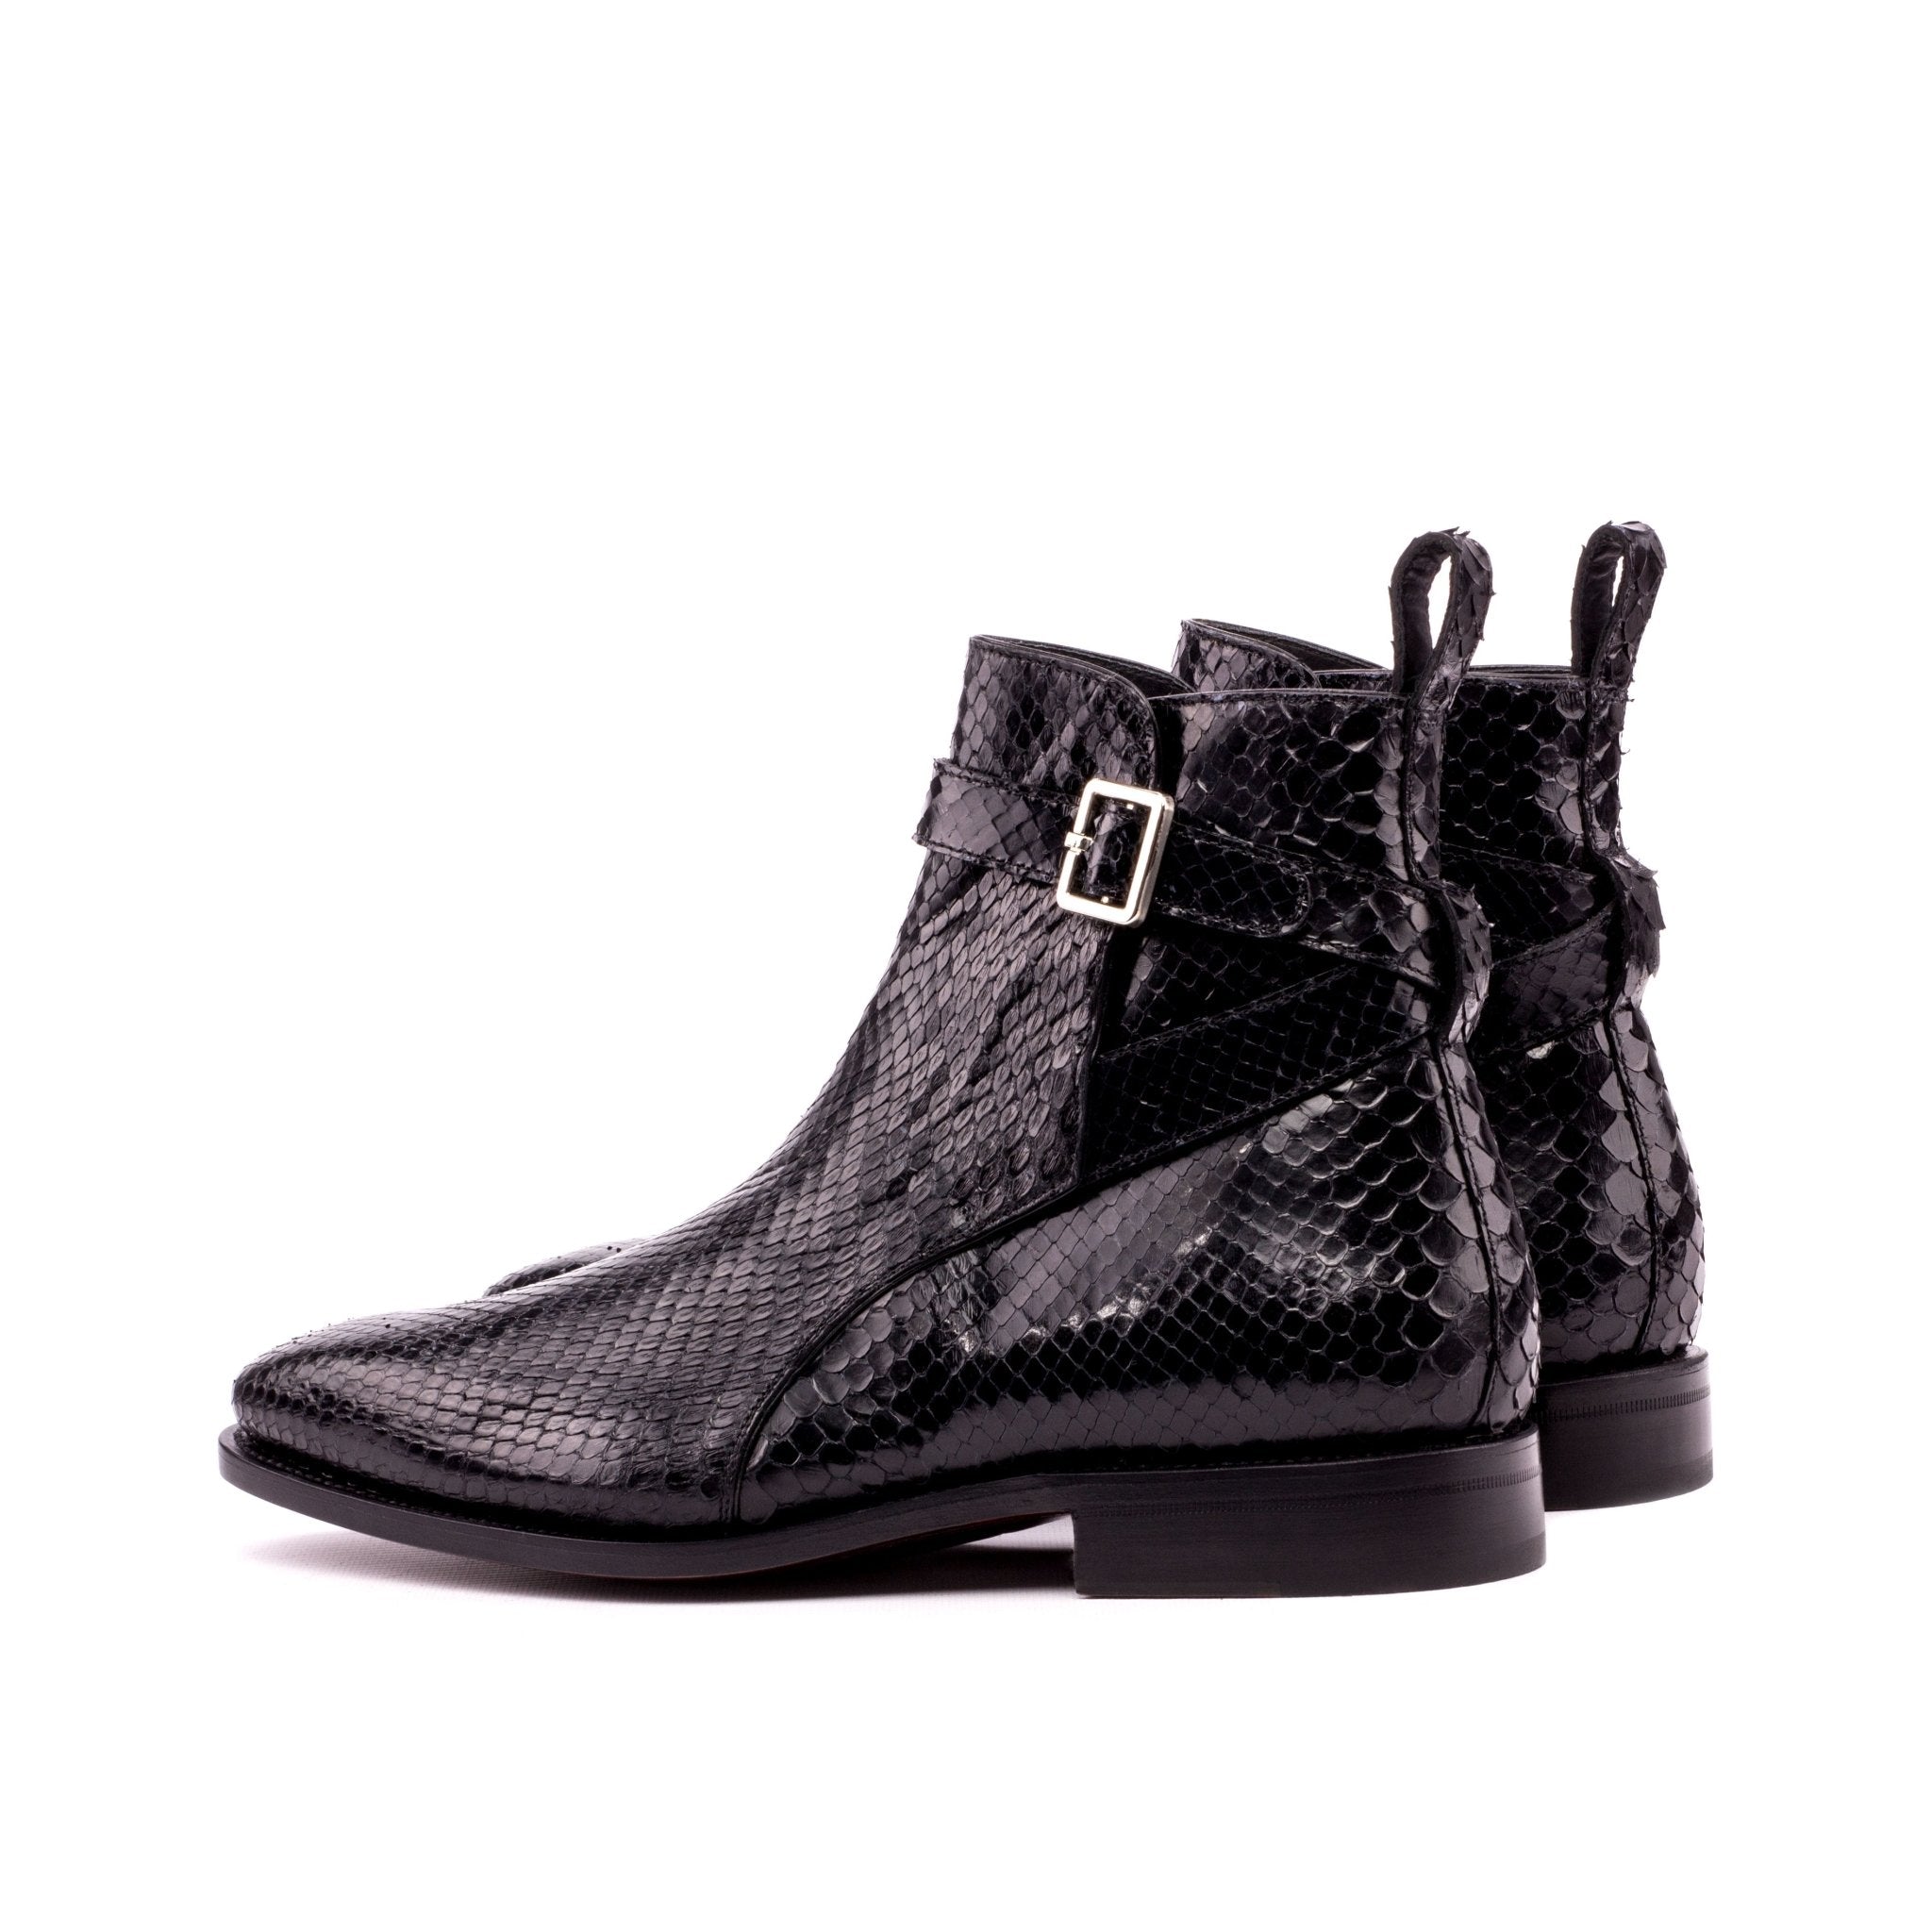 Men's Triple Black Python Jodhpur Boots - Maison de Kingsley Couture Harmonie et Fureur Spain